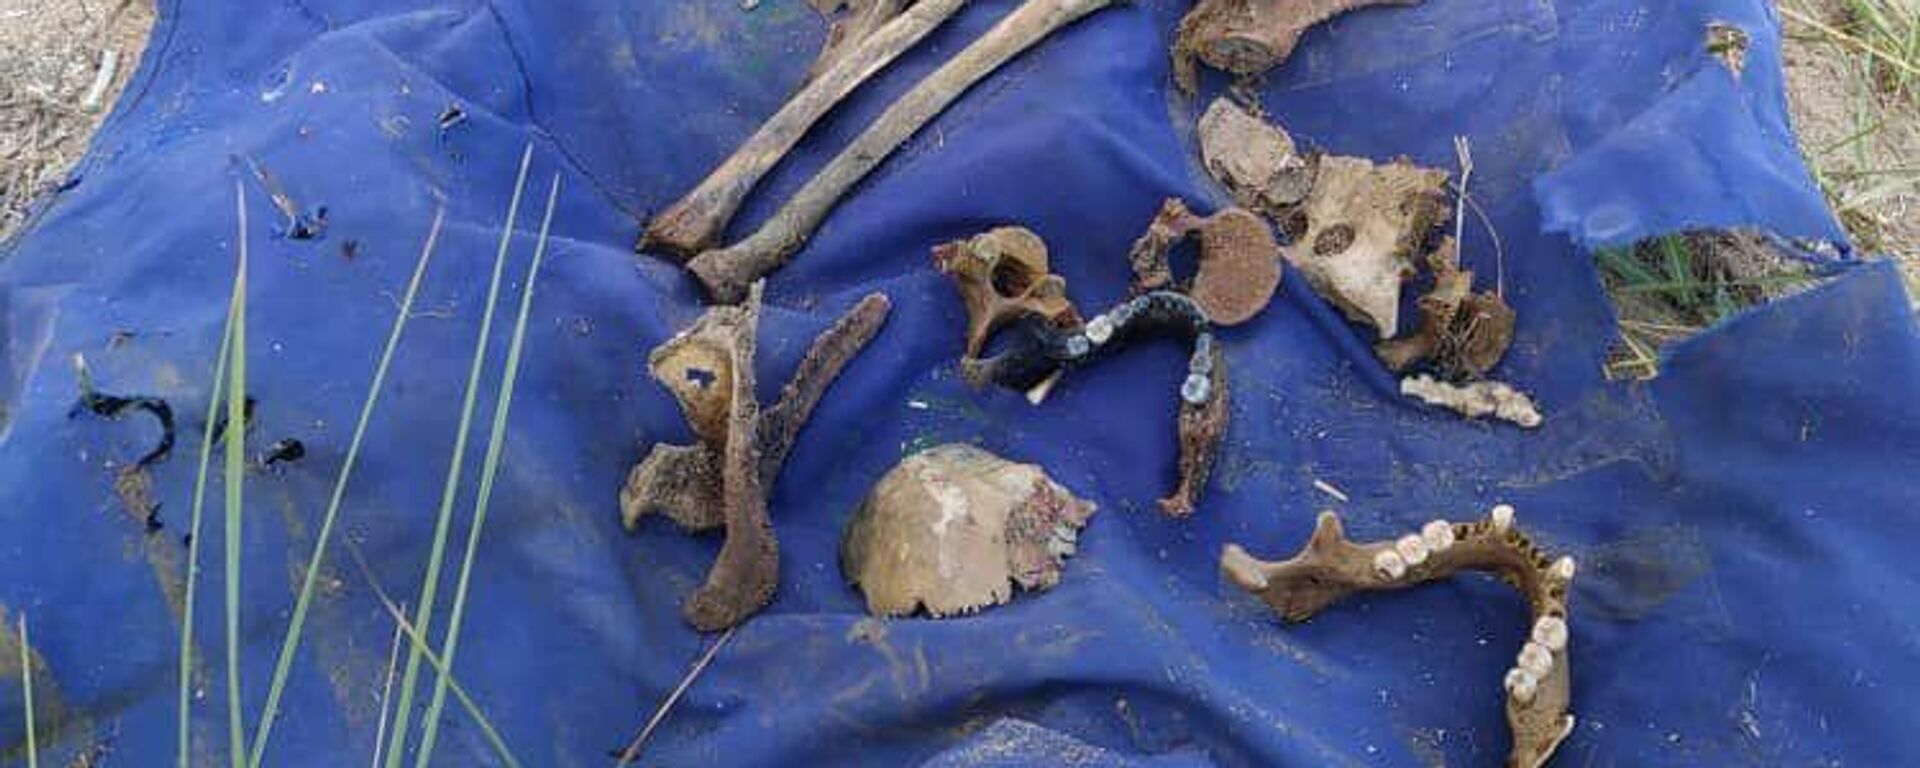 Человеческие останки обнаруженные на озере Иссык-Куль во время поисков тела  четырехлетней девочки - Sputnik Кыргызстан, 1920, 03.08.2022